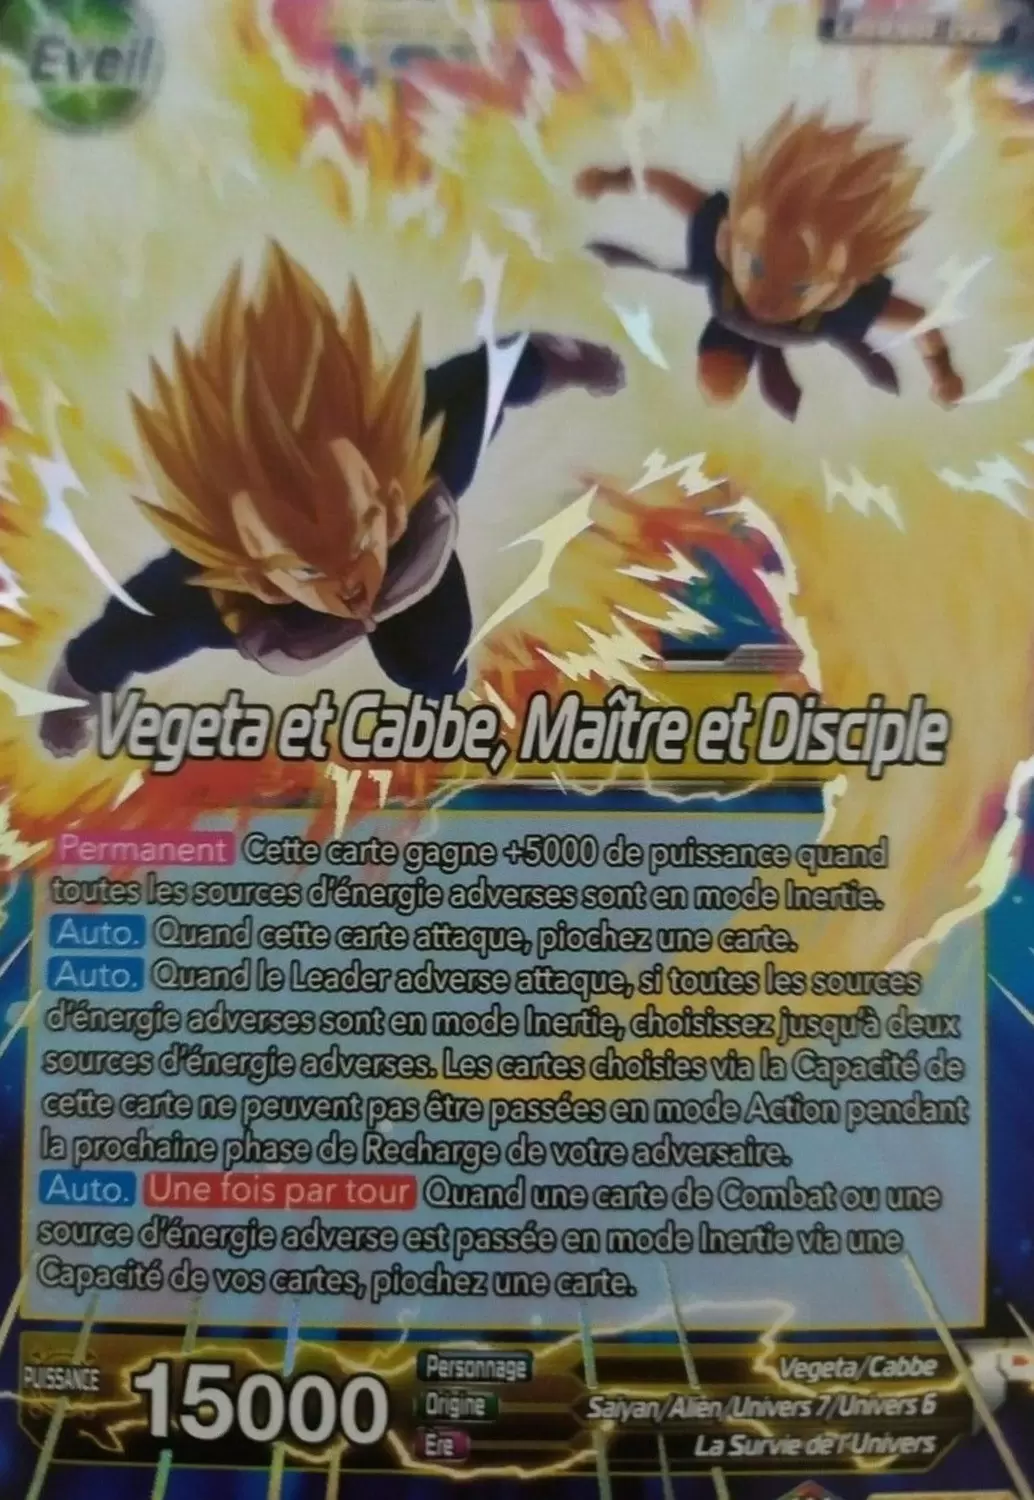 Vegeta et Cabbe Maitre et Disciple XD1-01 ST/VF RARE Dragon Ball Super 